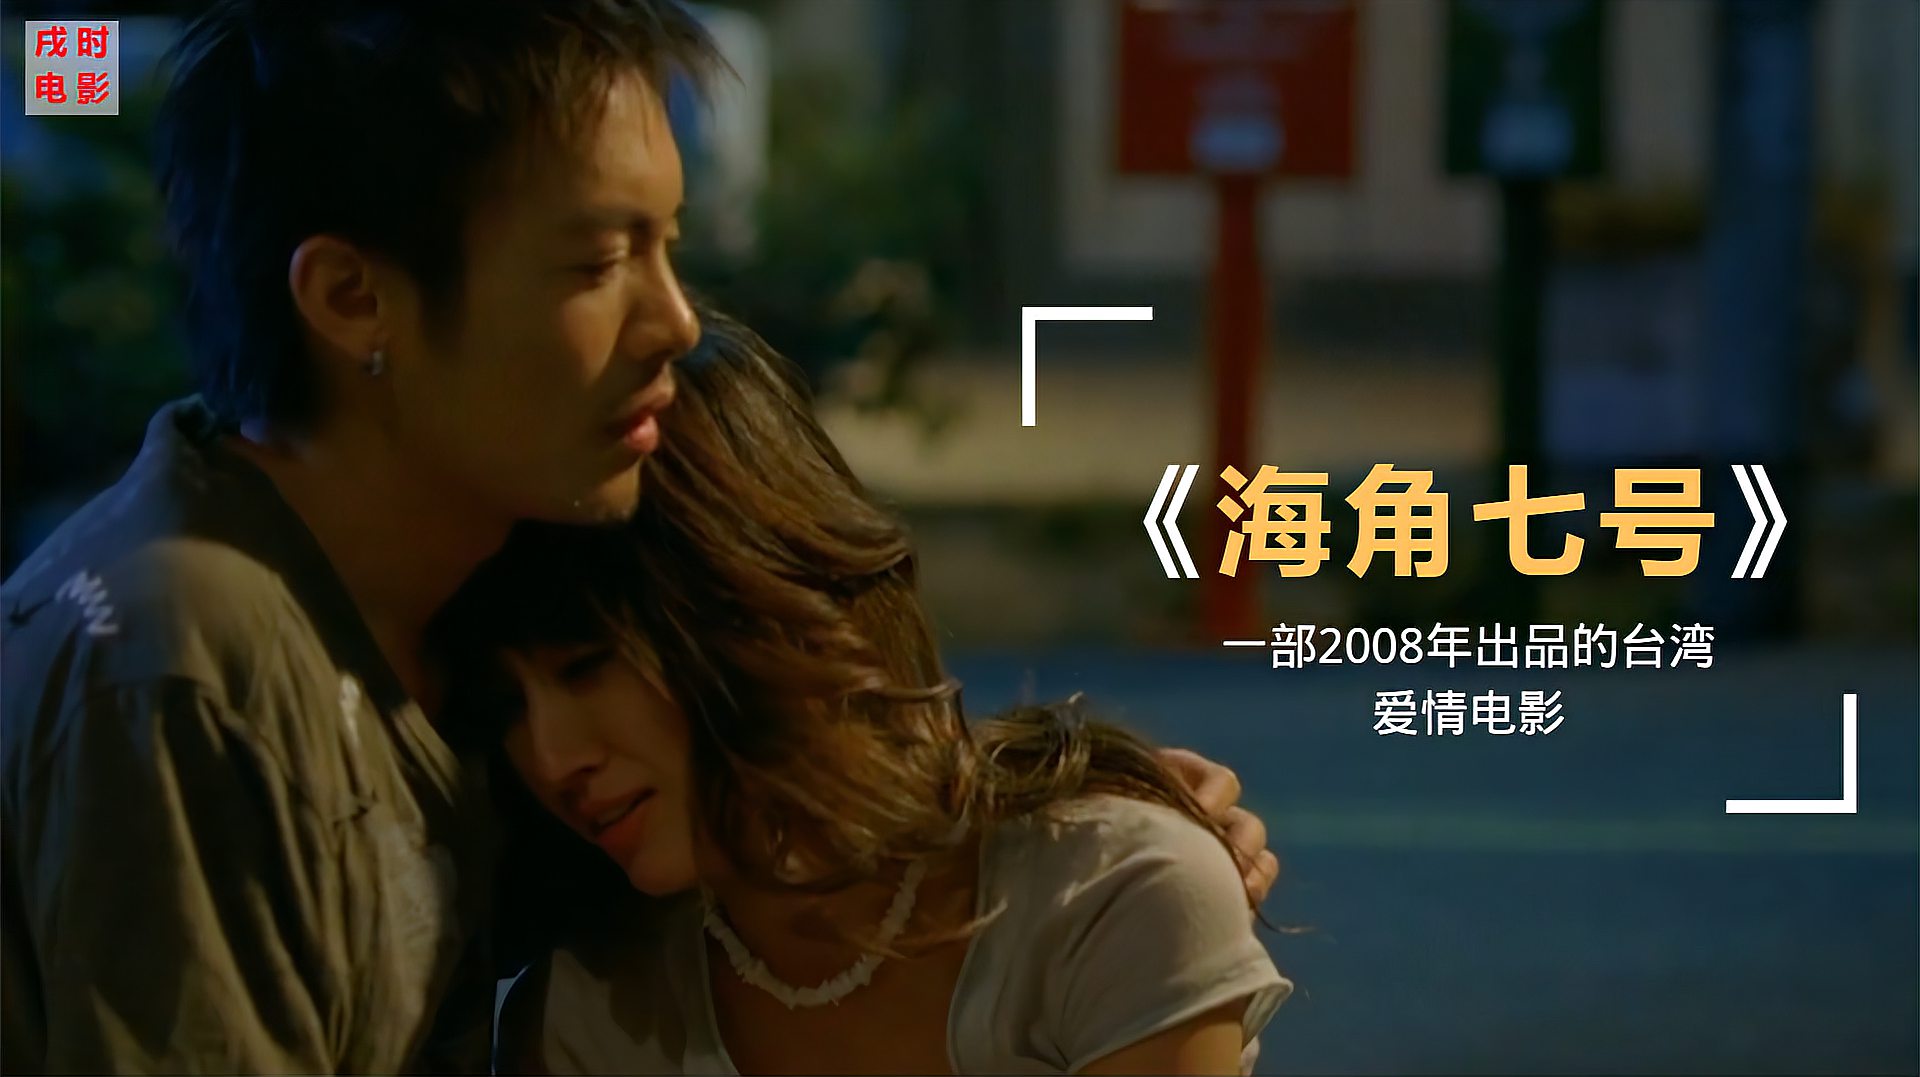 中国台湾电影《海角七号》:邮递员成为歌手,还得到一个日本女友